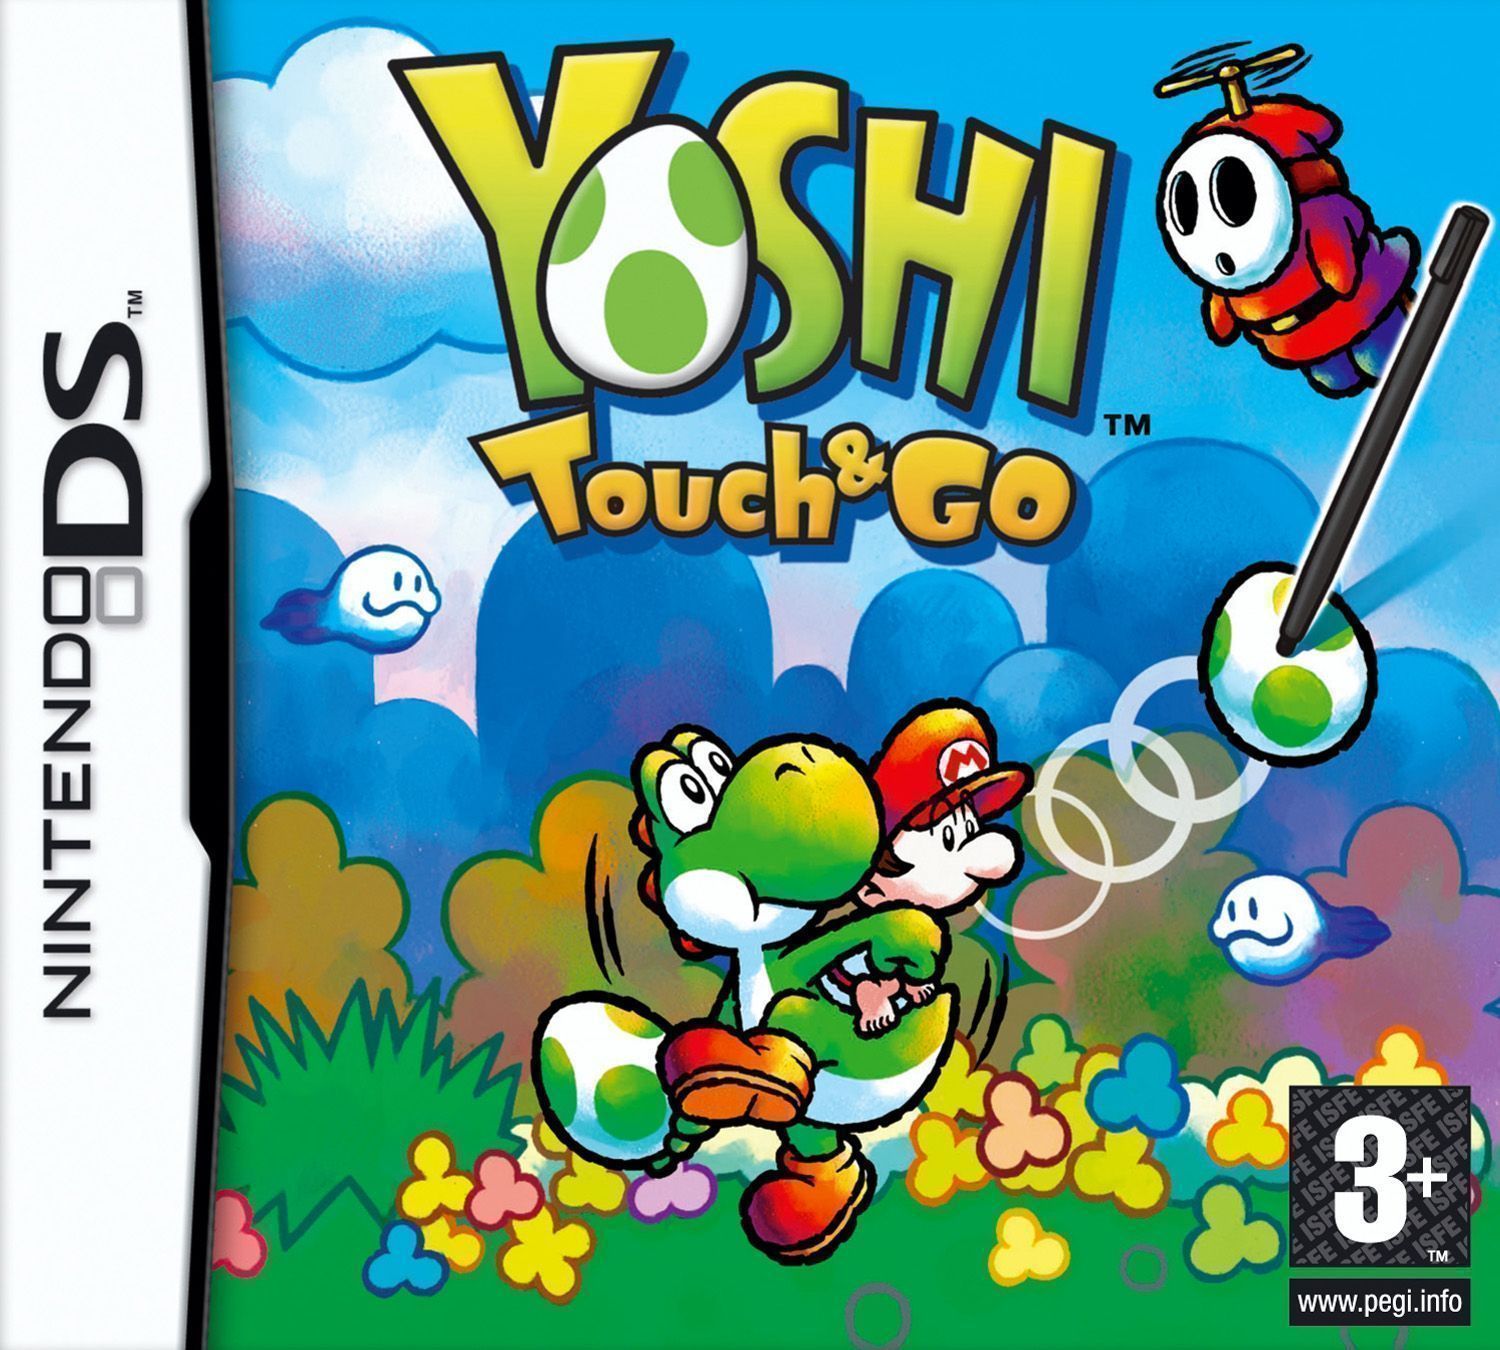 Yoshi Touch n Go